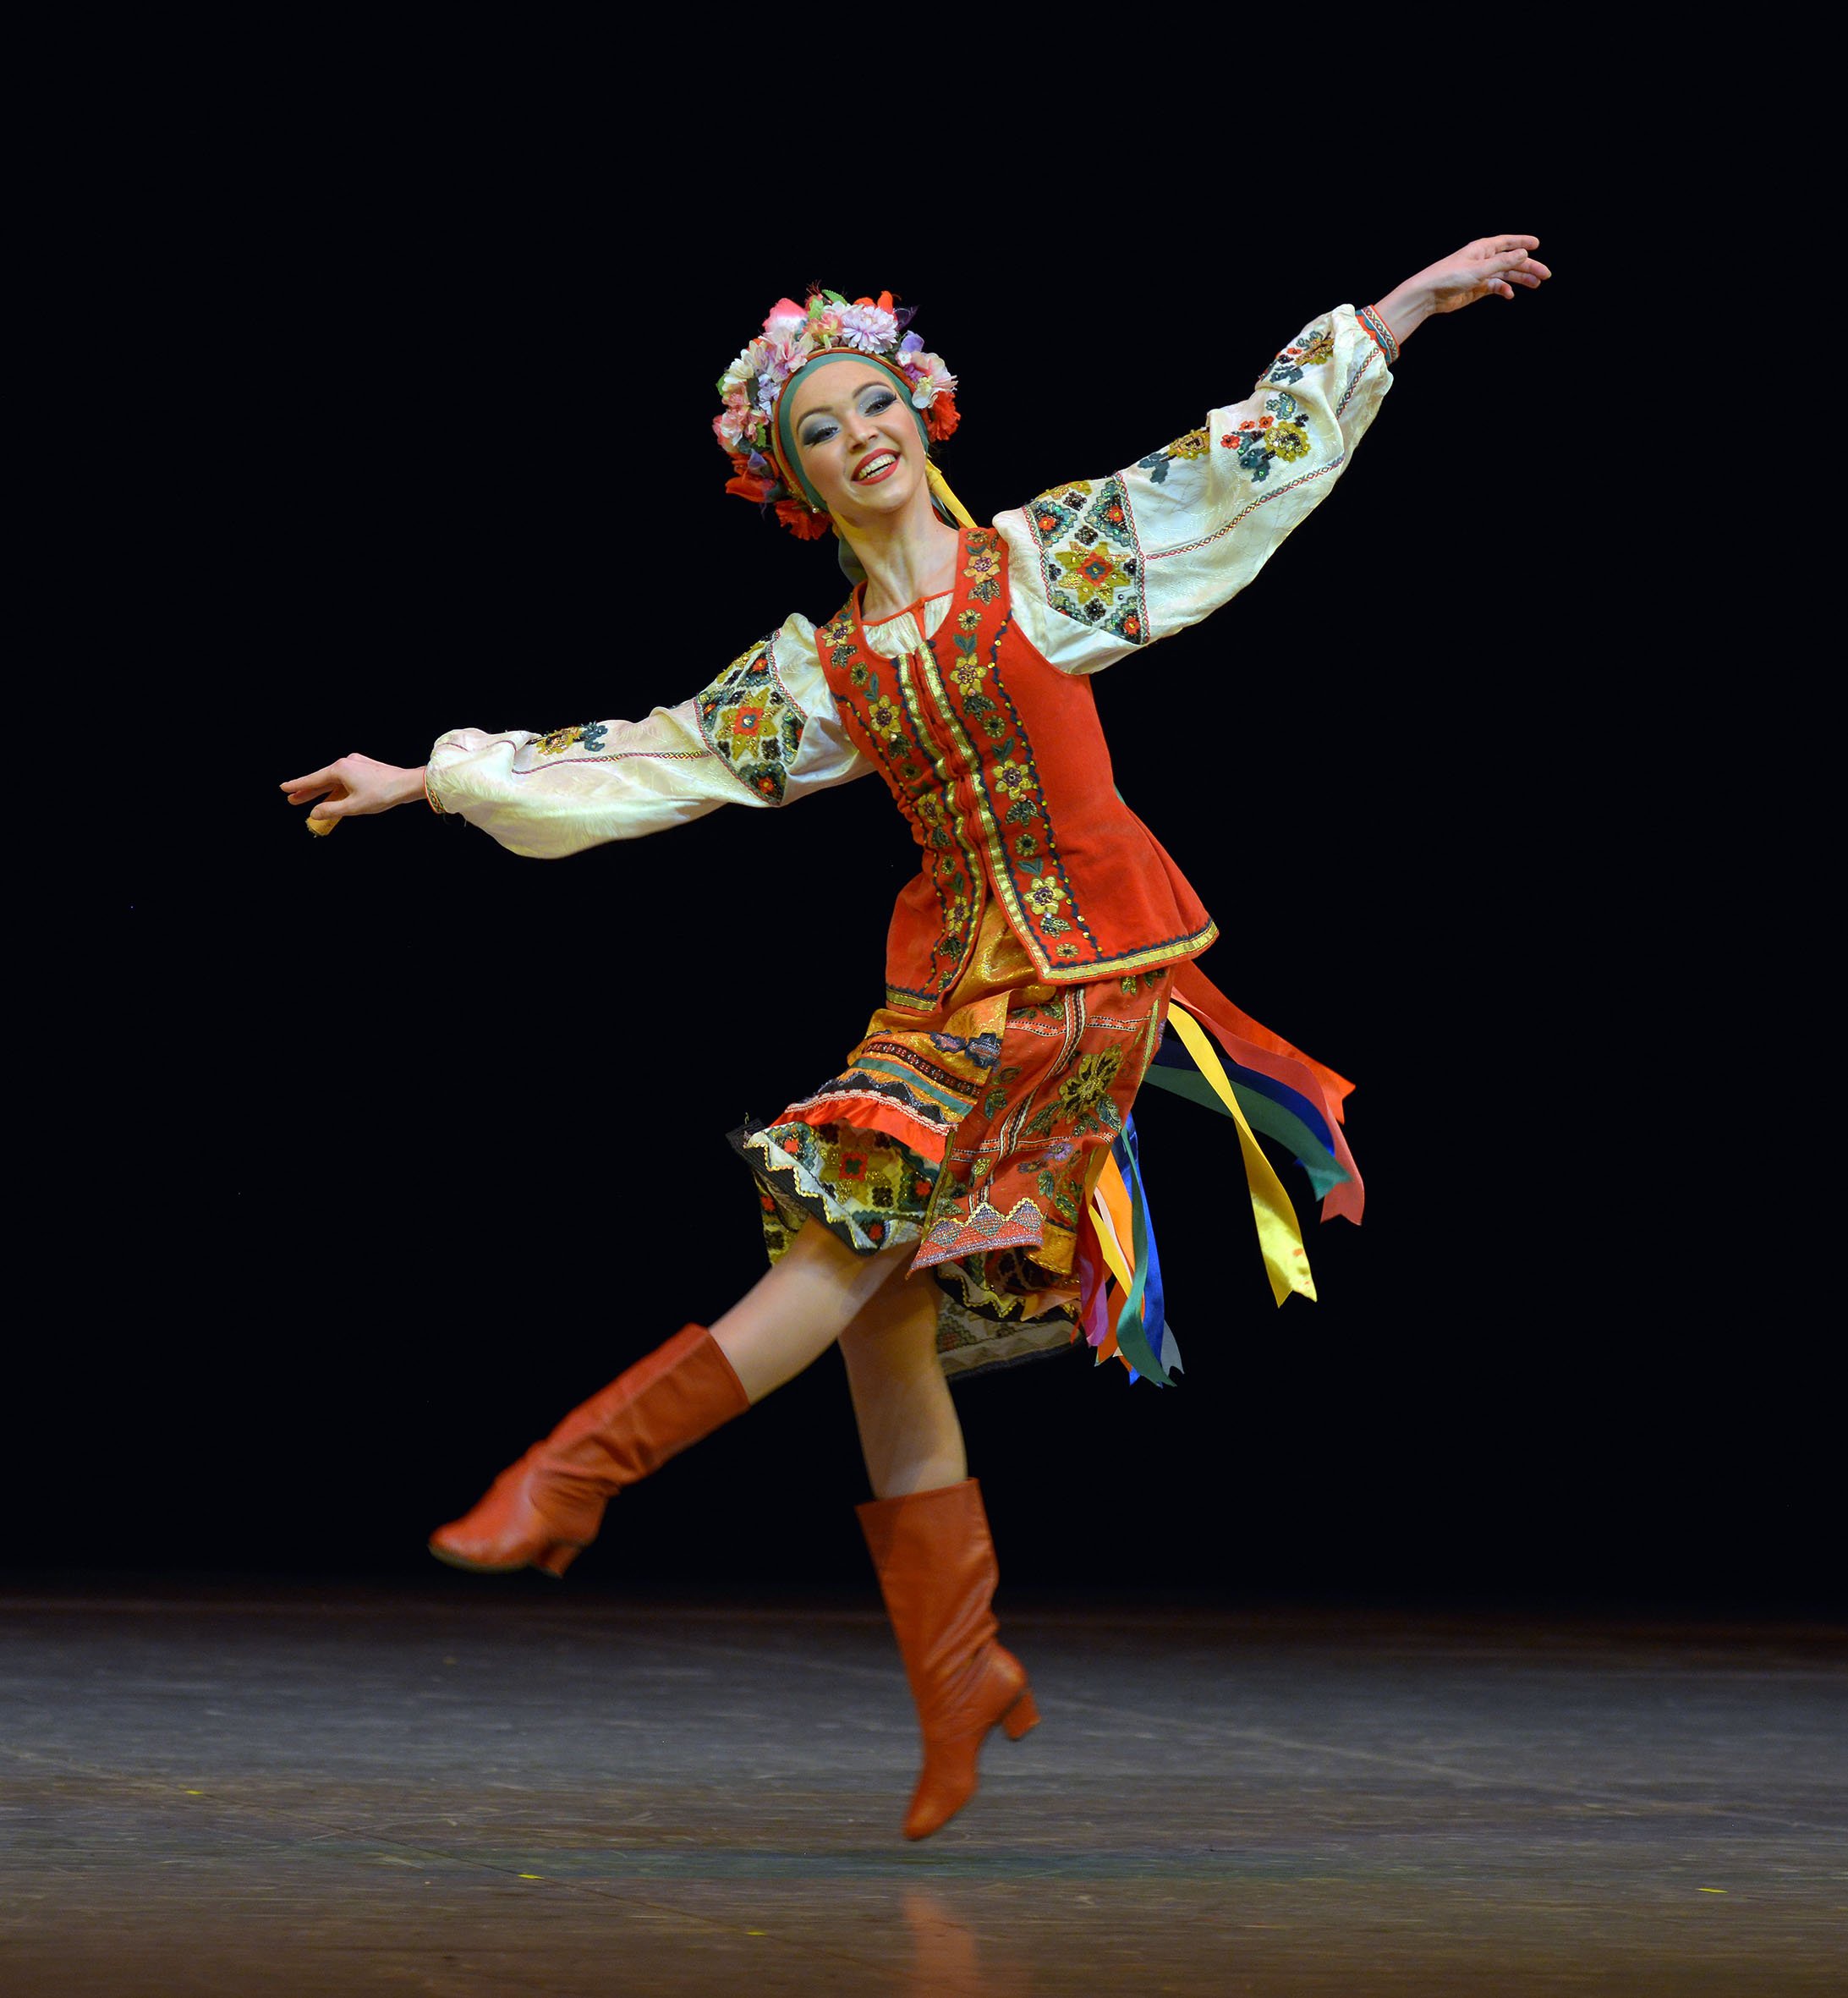 Русский народный танец девушки. Народные танцы. Русскин наооднве танцы. Народниктпнец. Русские народныетануы.